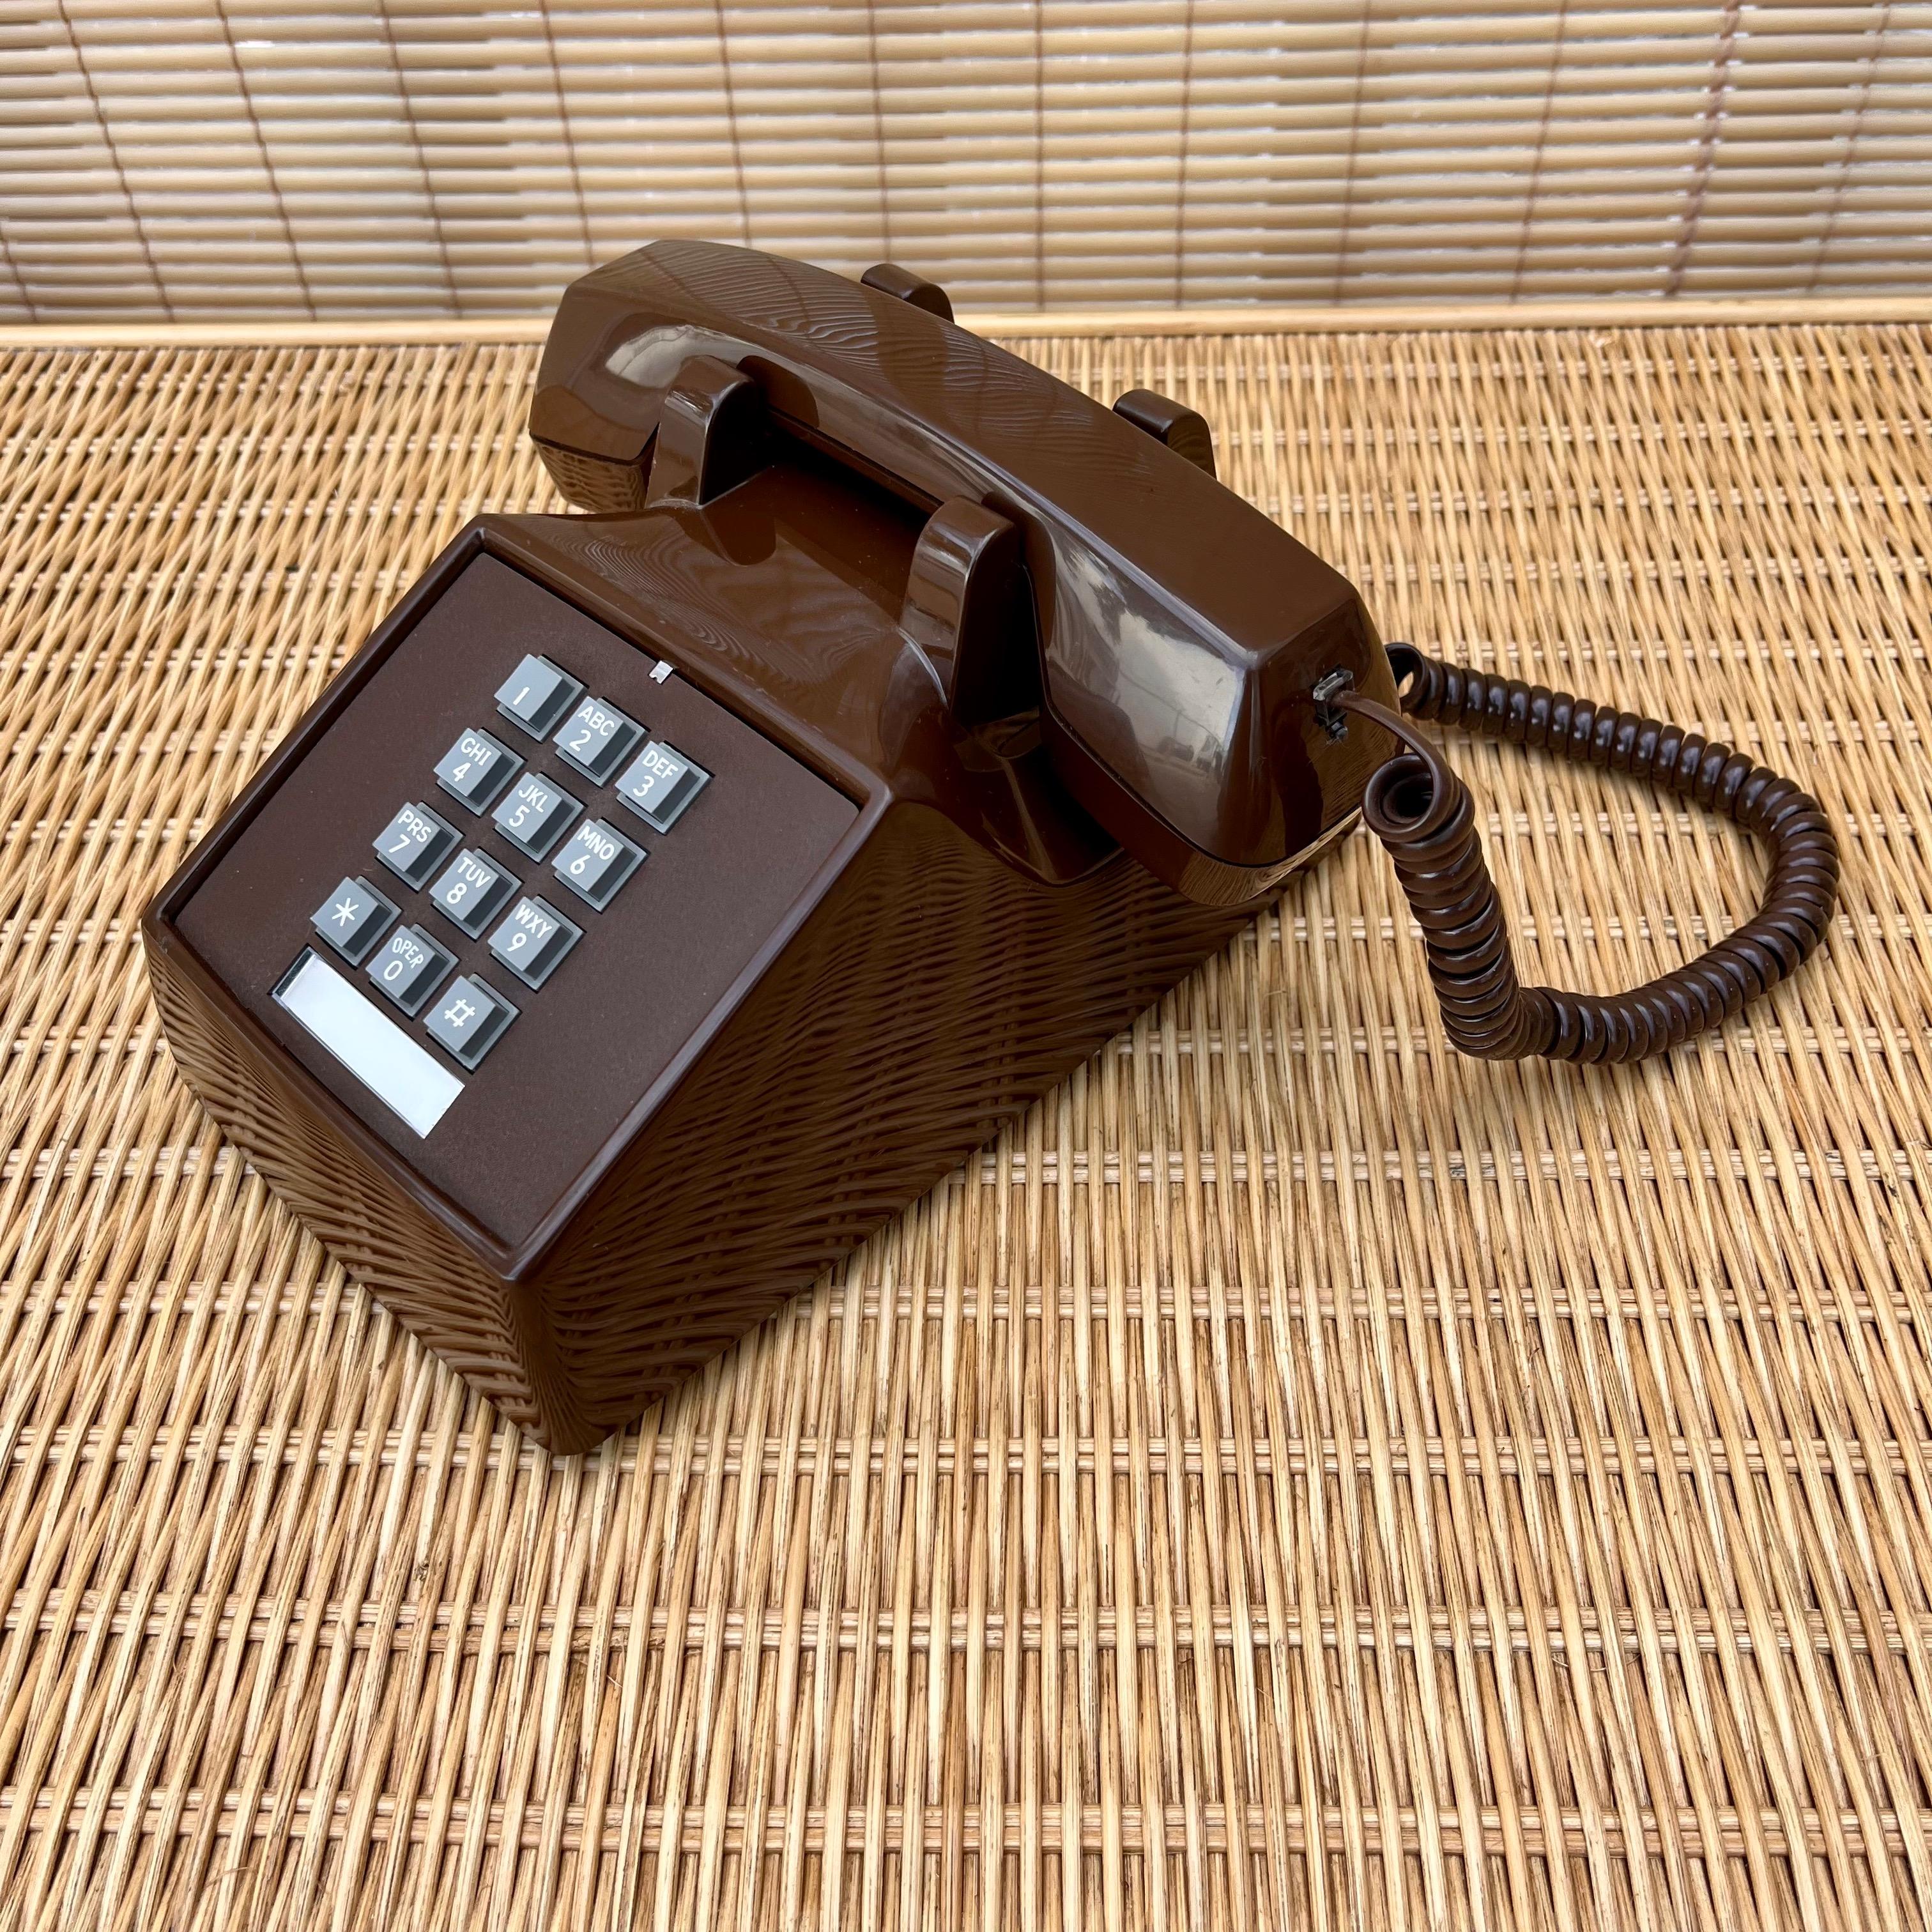 Téléphone de bureau vintage à touches de couleur chocolat. Circa 1980
Le corps est brun chocolat brillant et les boutons gris contrastent. 
La base est dotée de pieds en caoutchouc pour éviter de glisser.
Le cordon d'origine (qui se branche sur